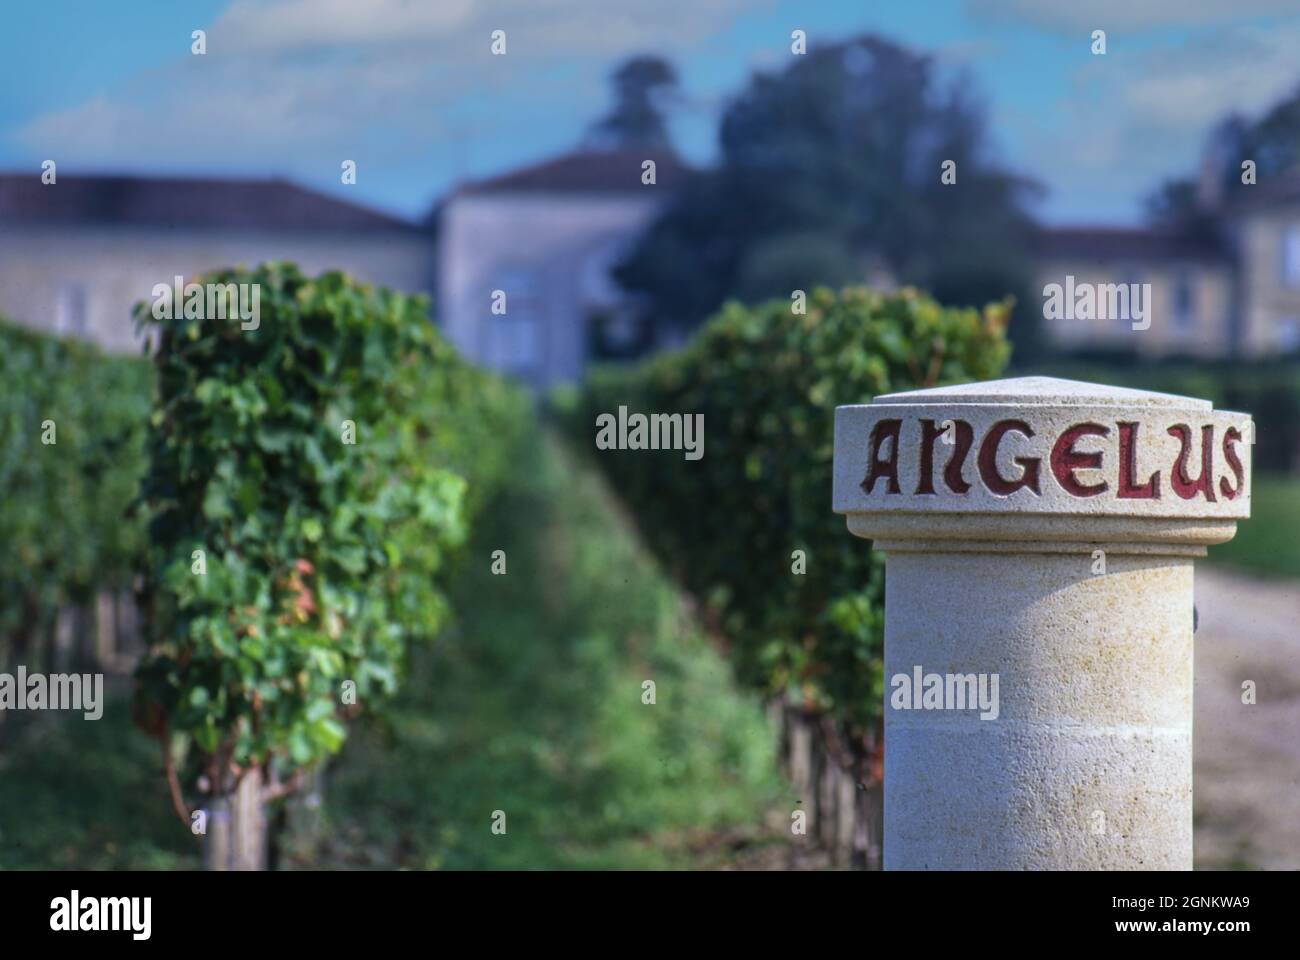 CHATEAU ANGELUS Pierre Vigne borne frontière dans les vignobles de Château Angélus, Saint Emilion, Gironde, France. Banque D'Images